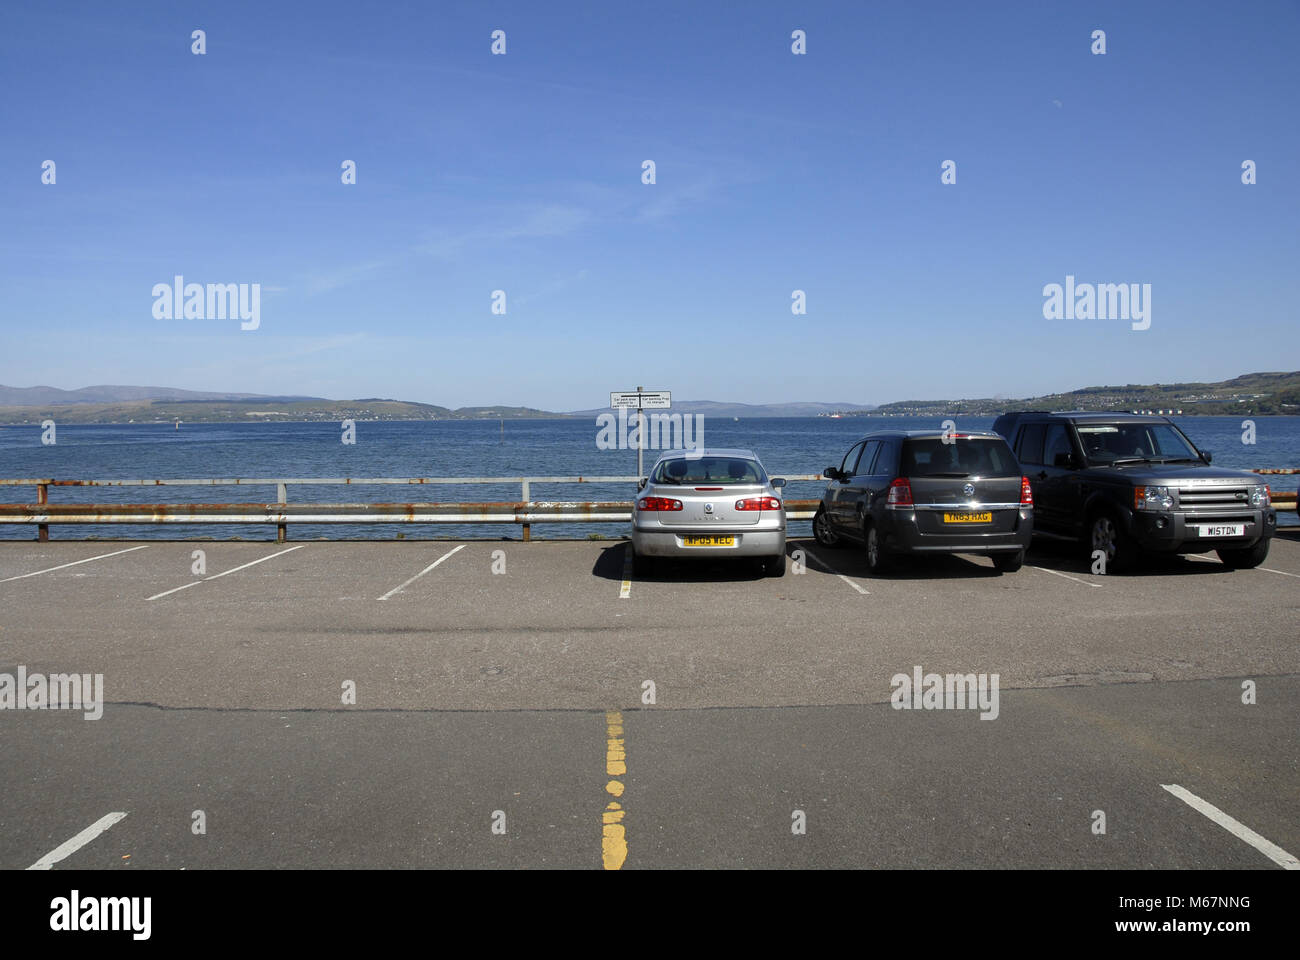 Parcheggio auto con diverse aree per pagare e parcheggio gratuito, Dunoon Foto Stock